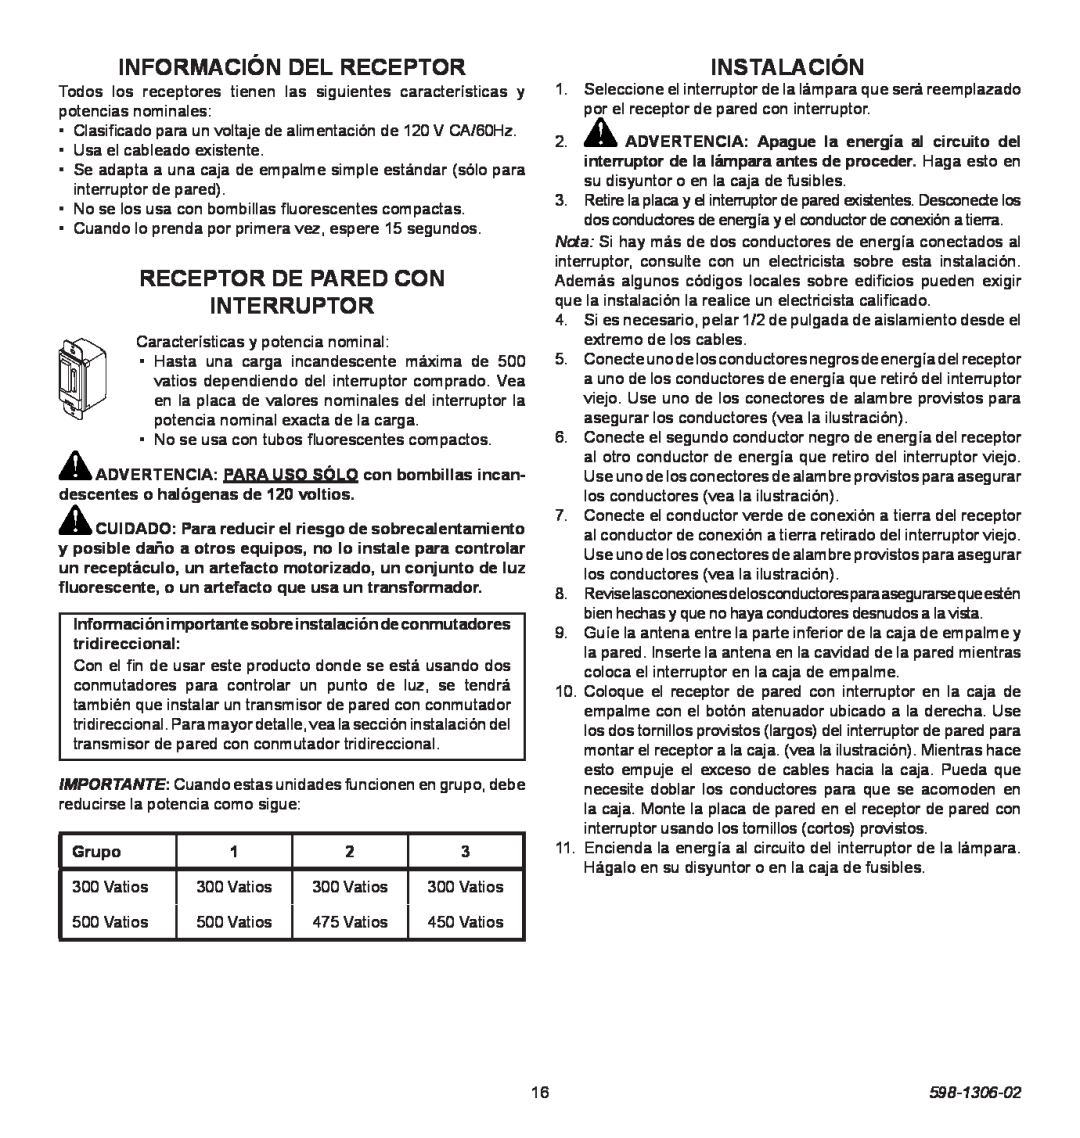 Heath Zenith 598-1306-02 manual Información Del Receptor, Receptor De Pared Con Interruptor, Instalación, Grupo 